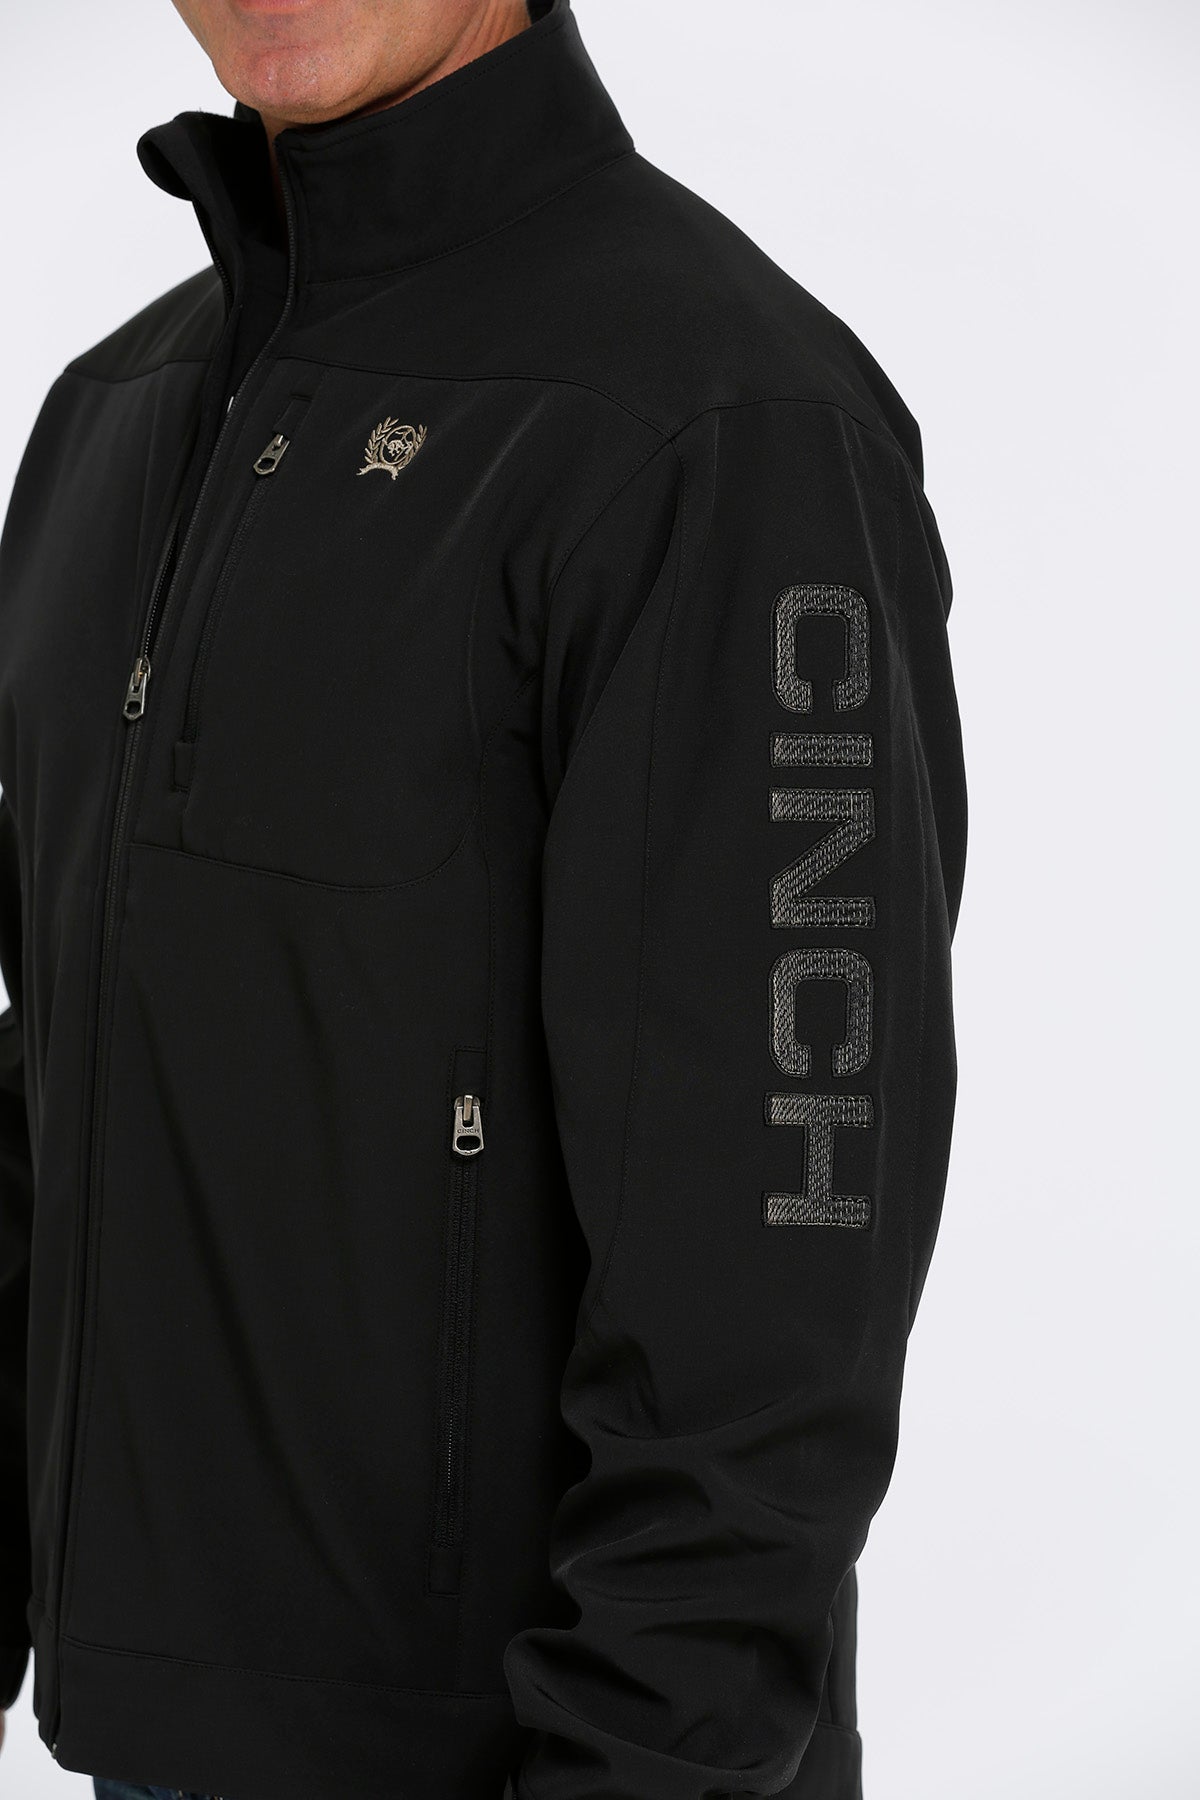 Cinch Men's Bonded Black Jacket